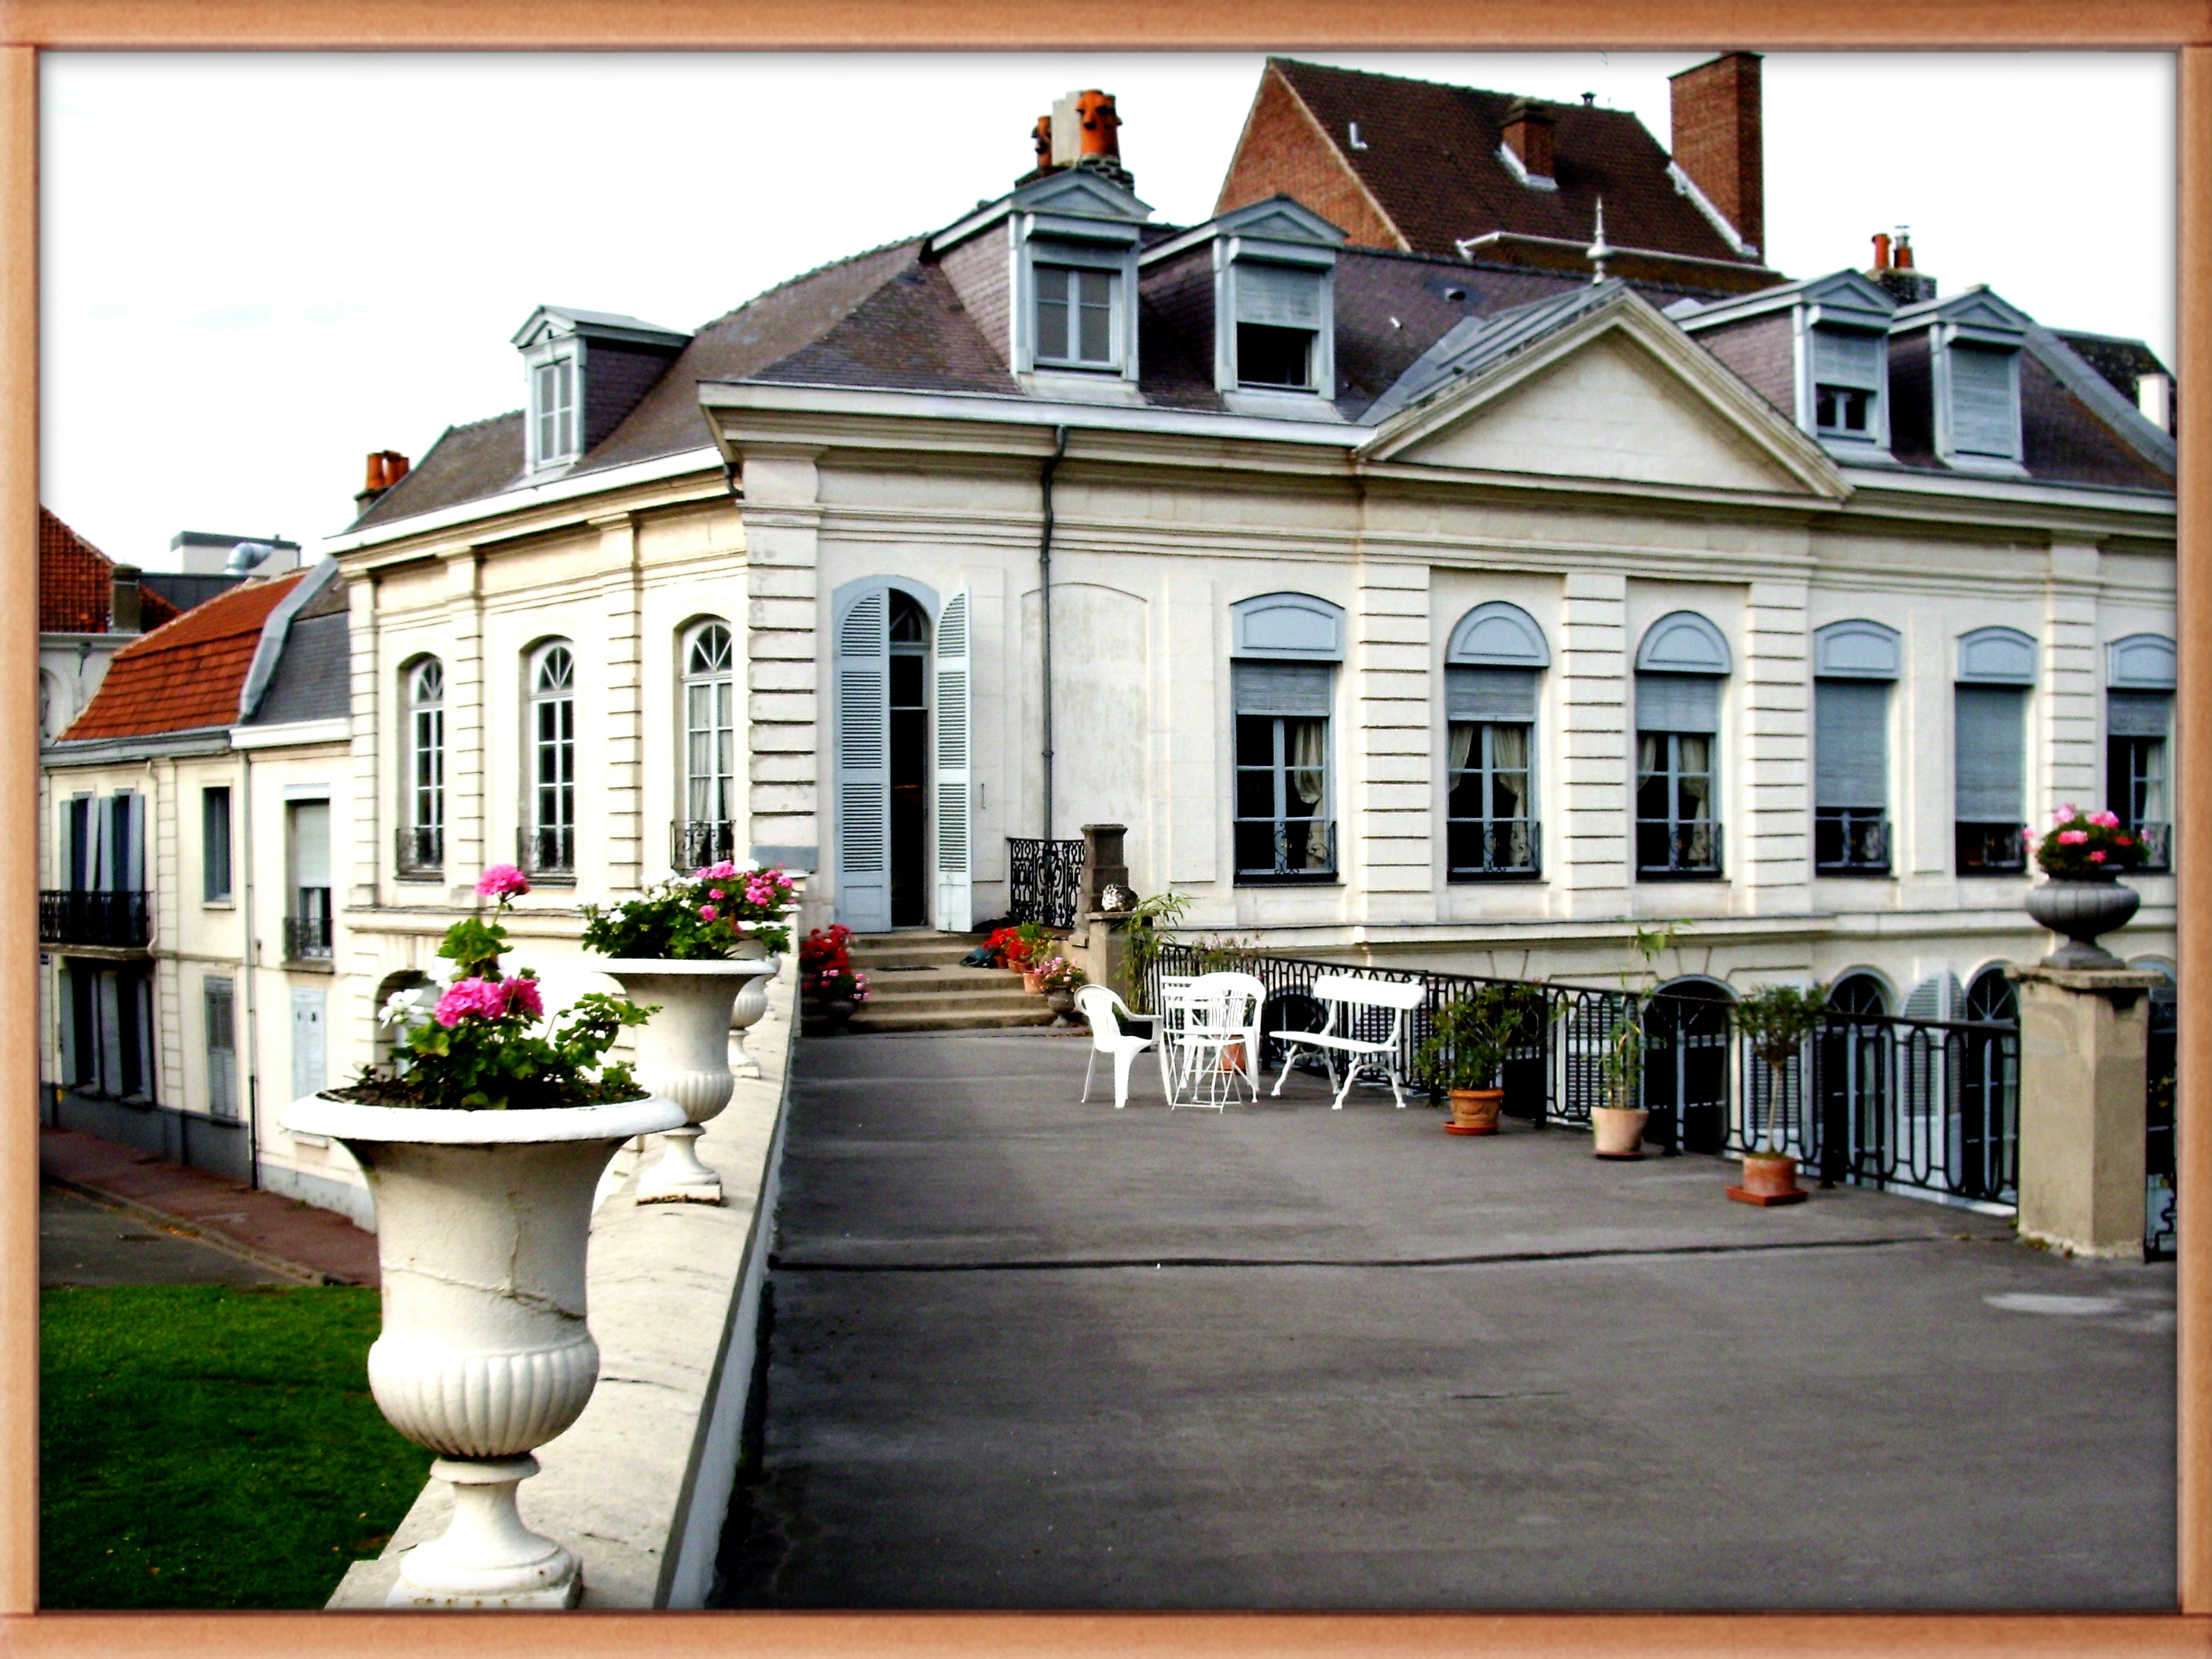 Hotel-Virnot-de-Lamissart-Prouvost